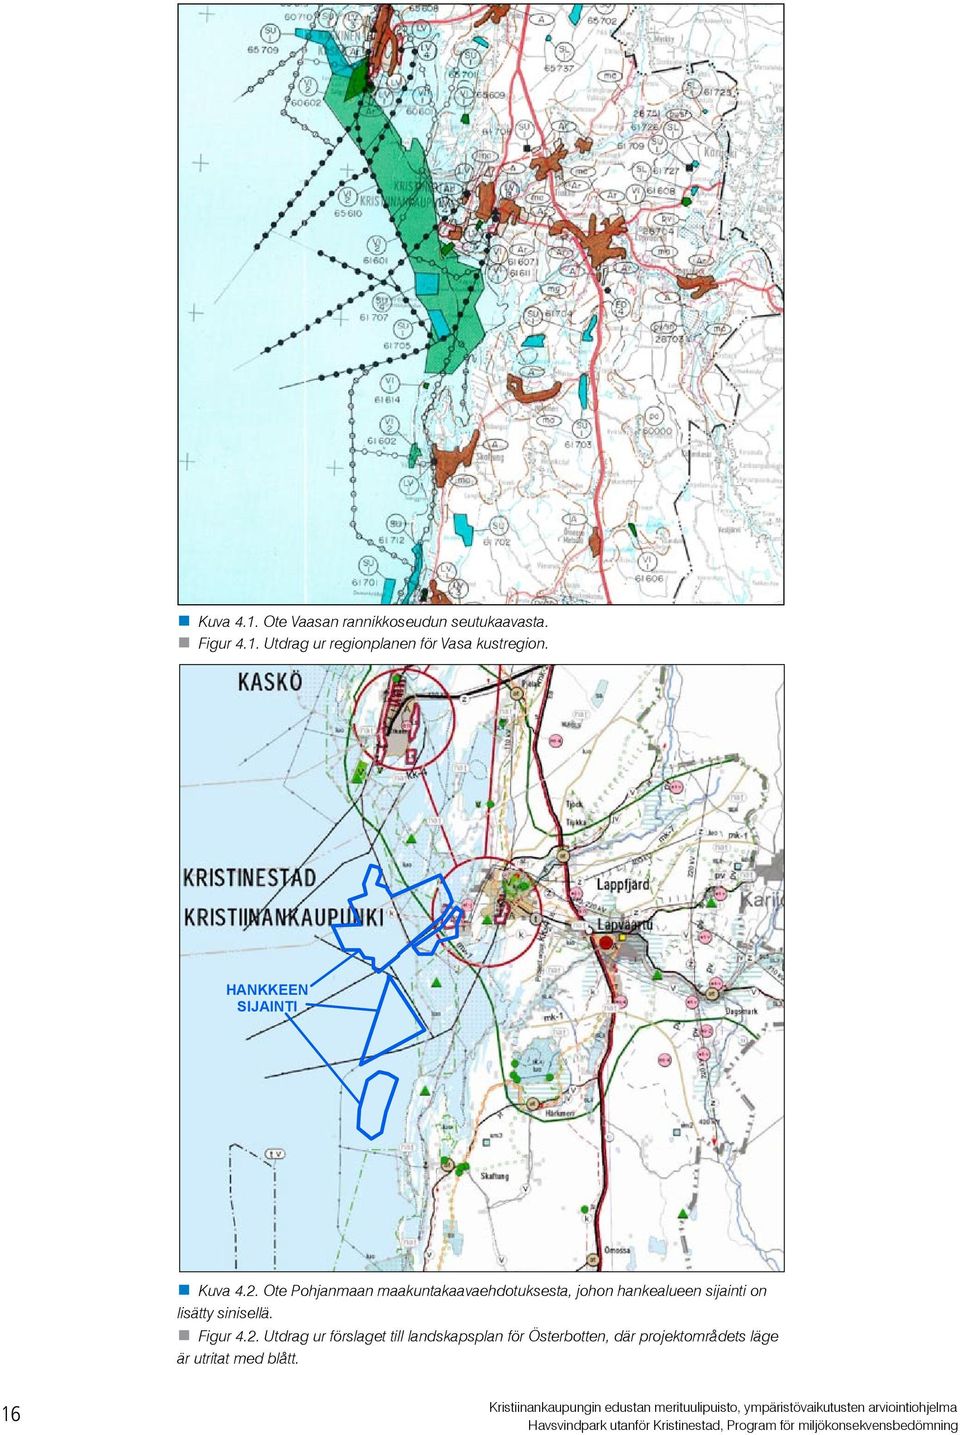 Figur 4.2. Utdrag ur förslaget till landskapsplan för Österbotten, där projektområdets läge är utritat med blått.